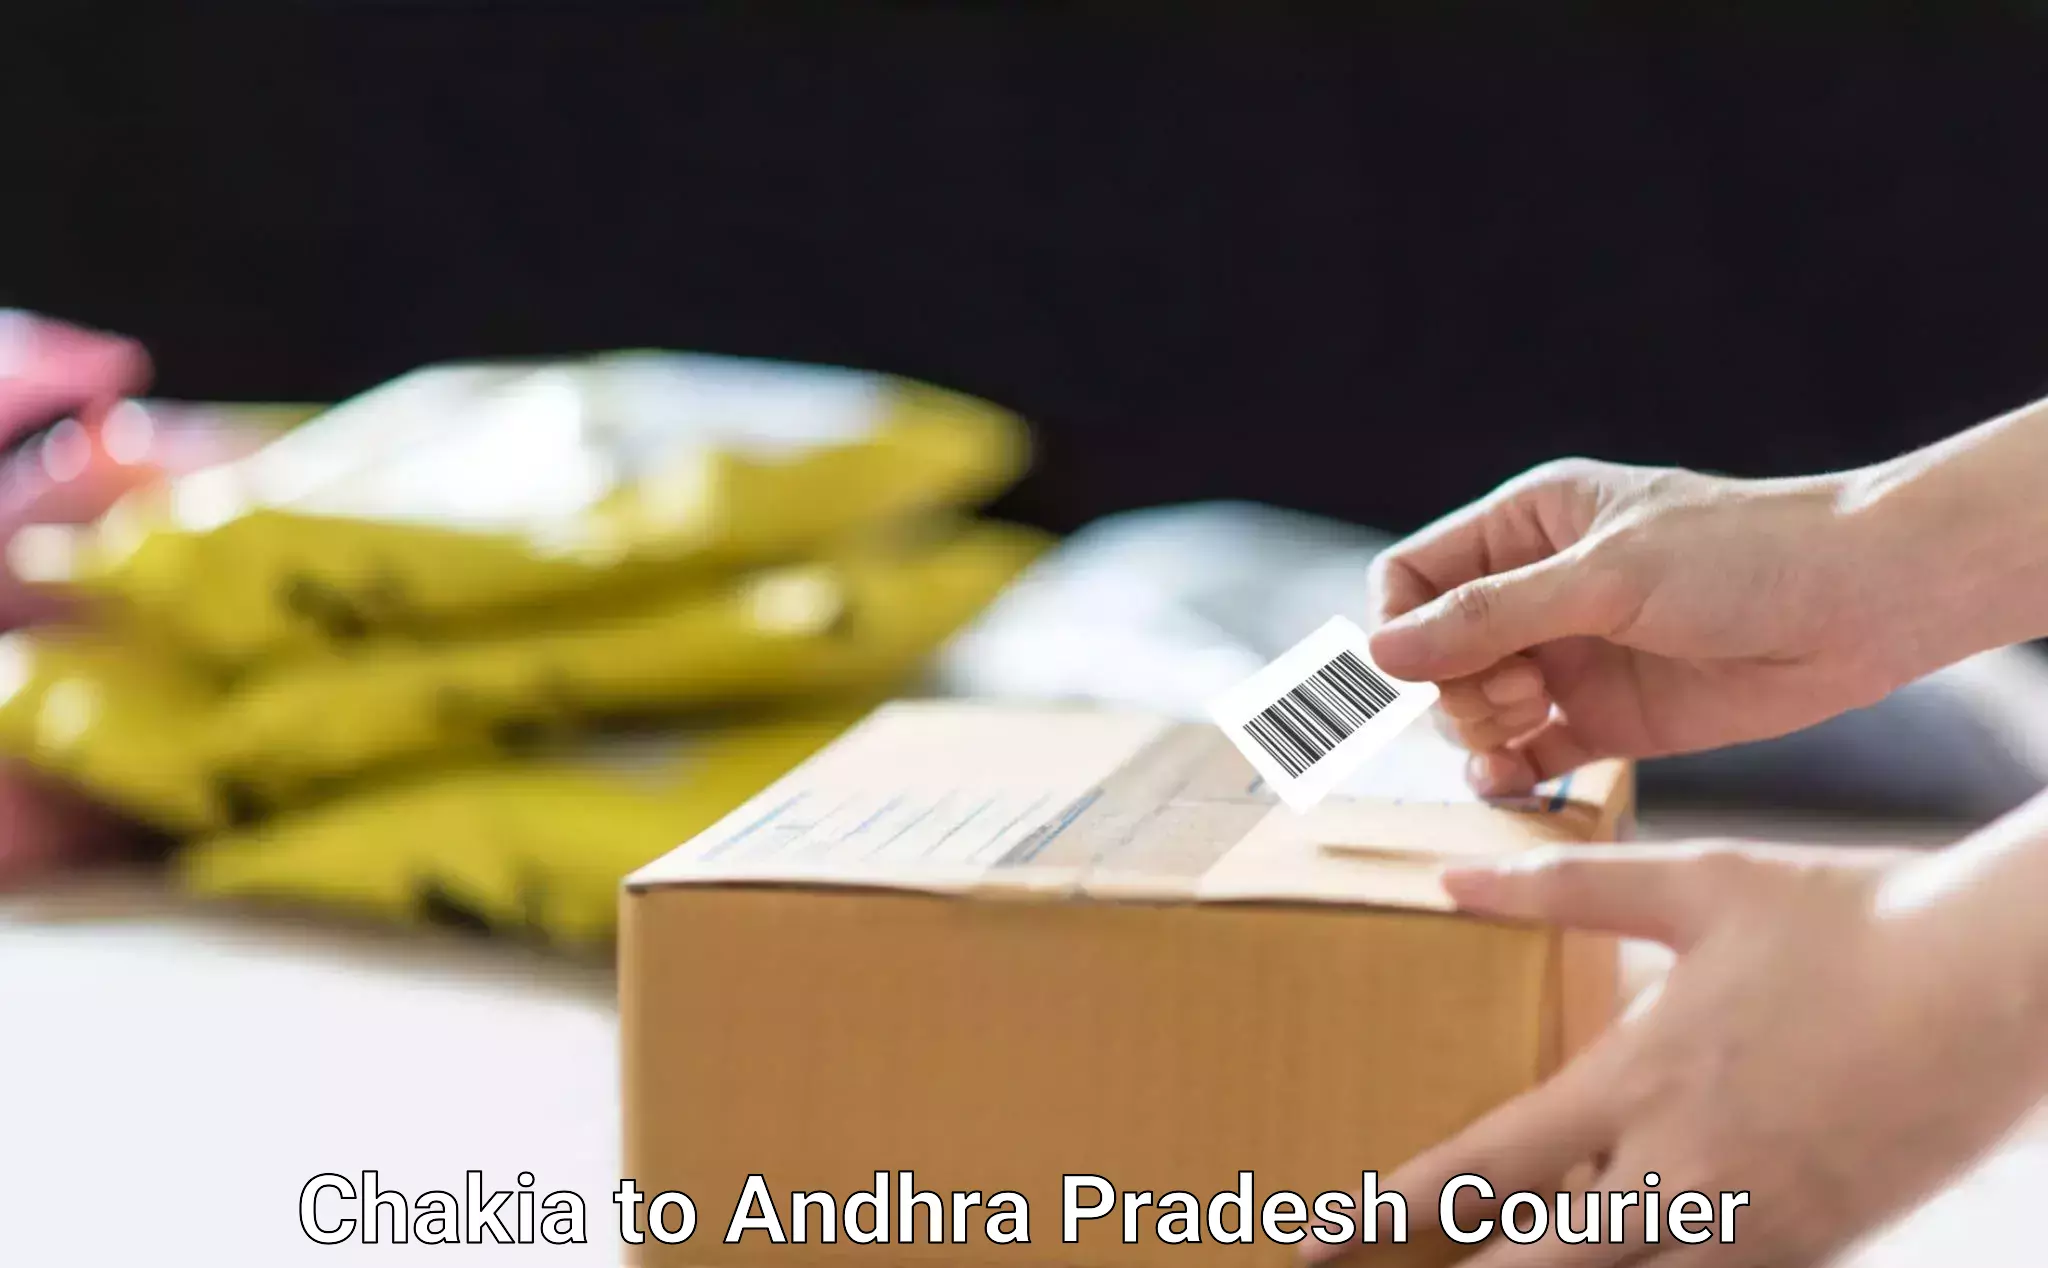 Reliable movers Chakia to Andhra Pradesh